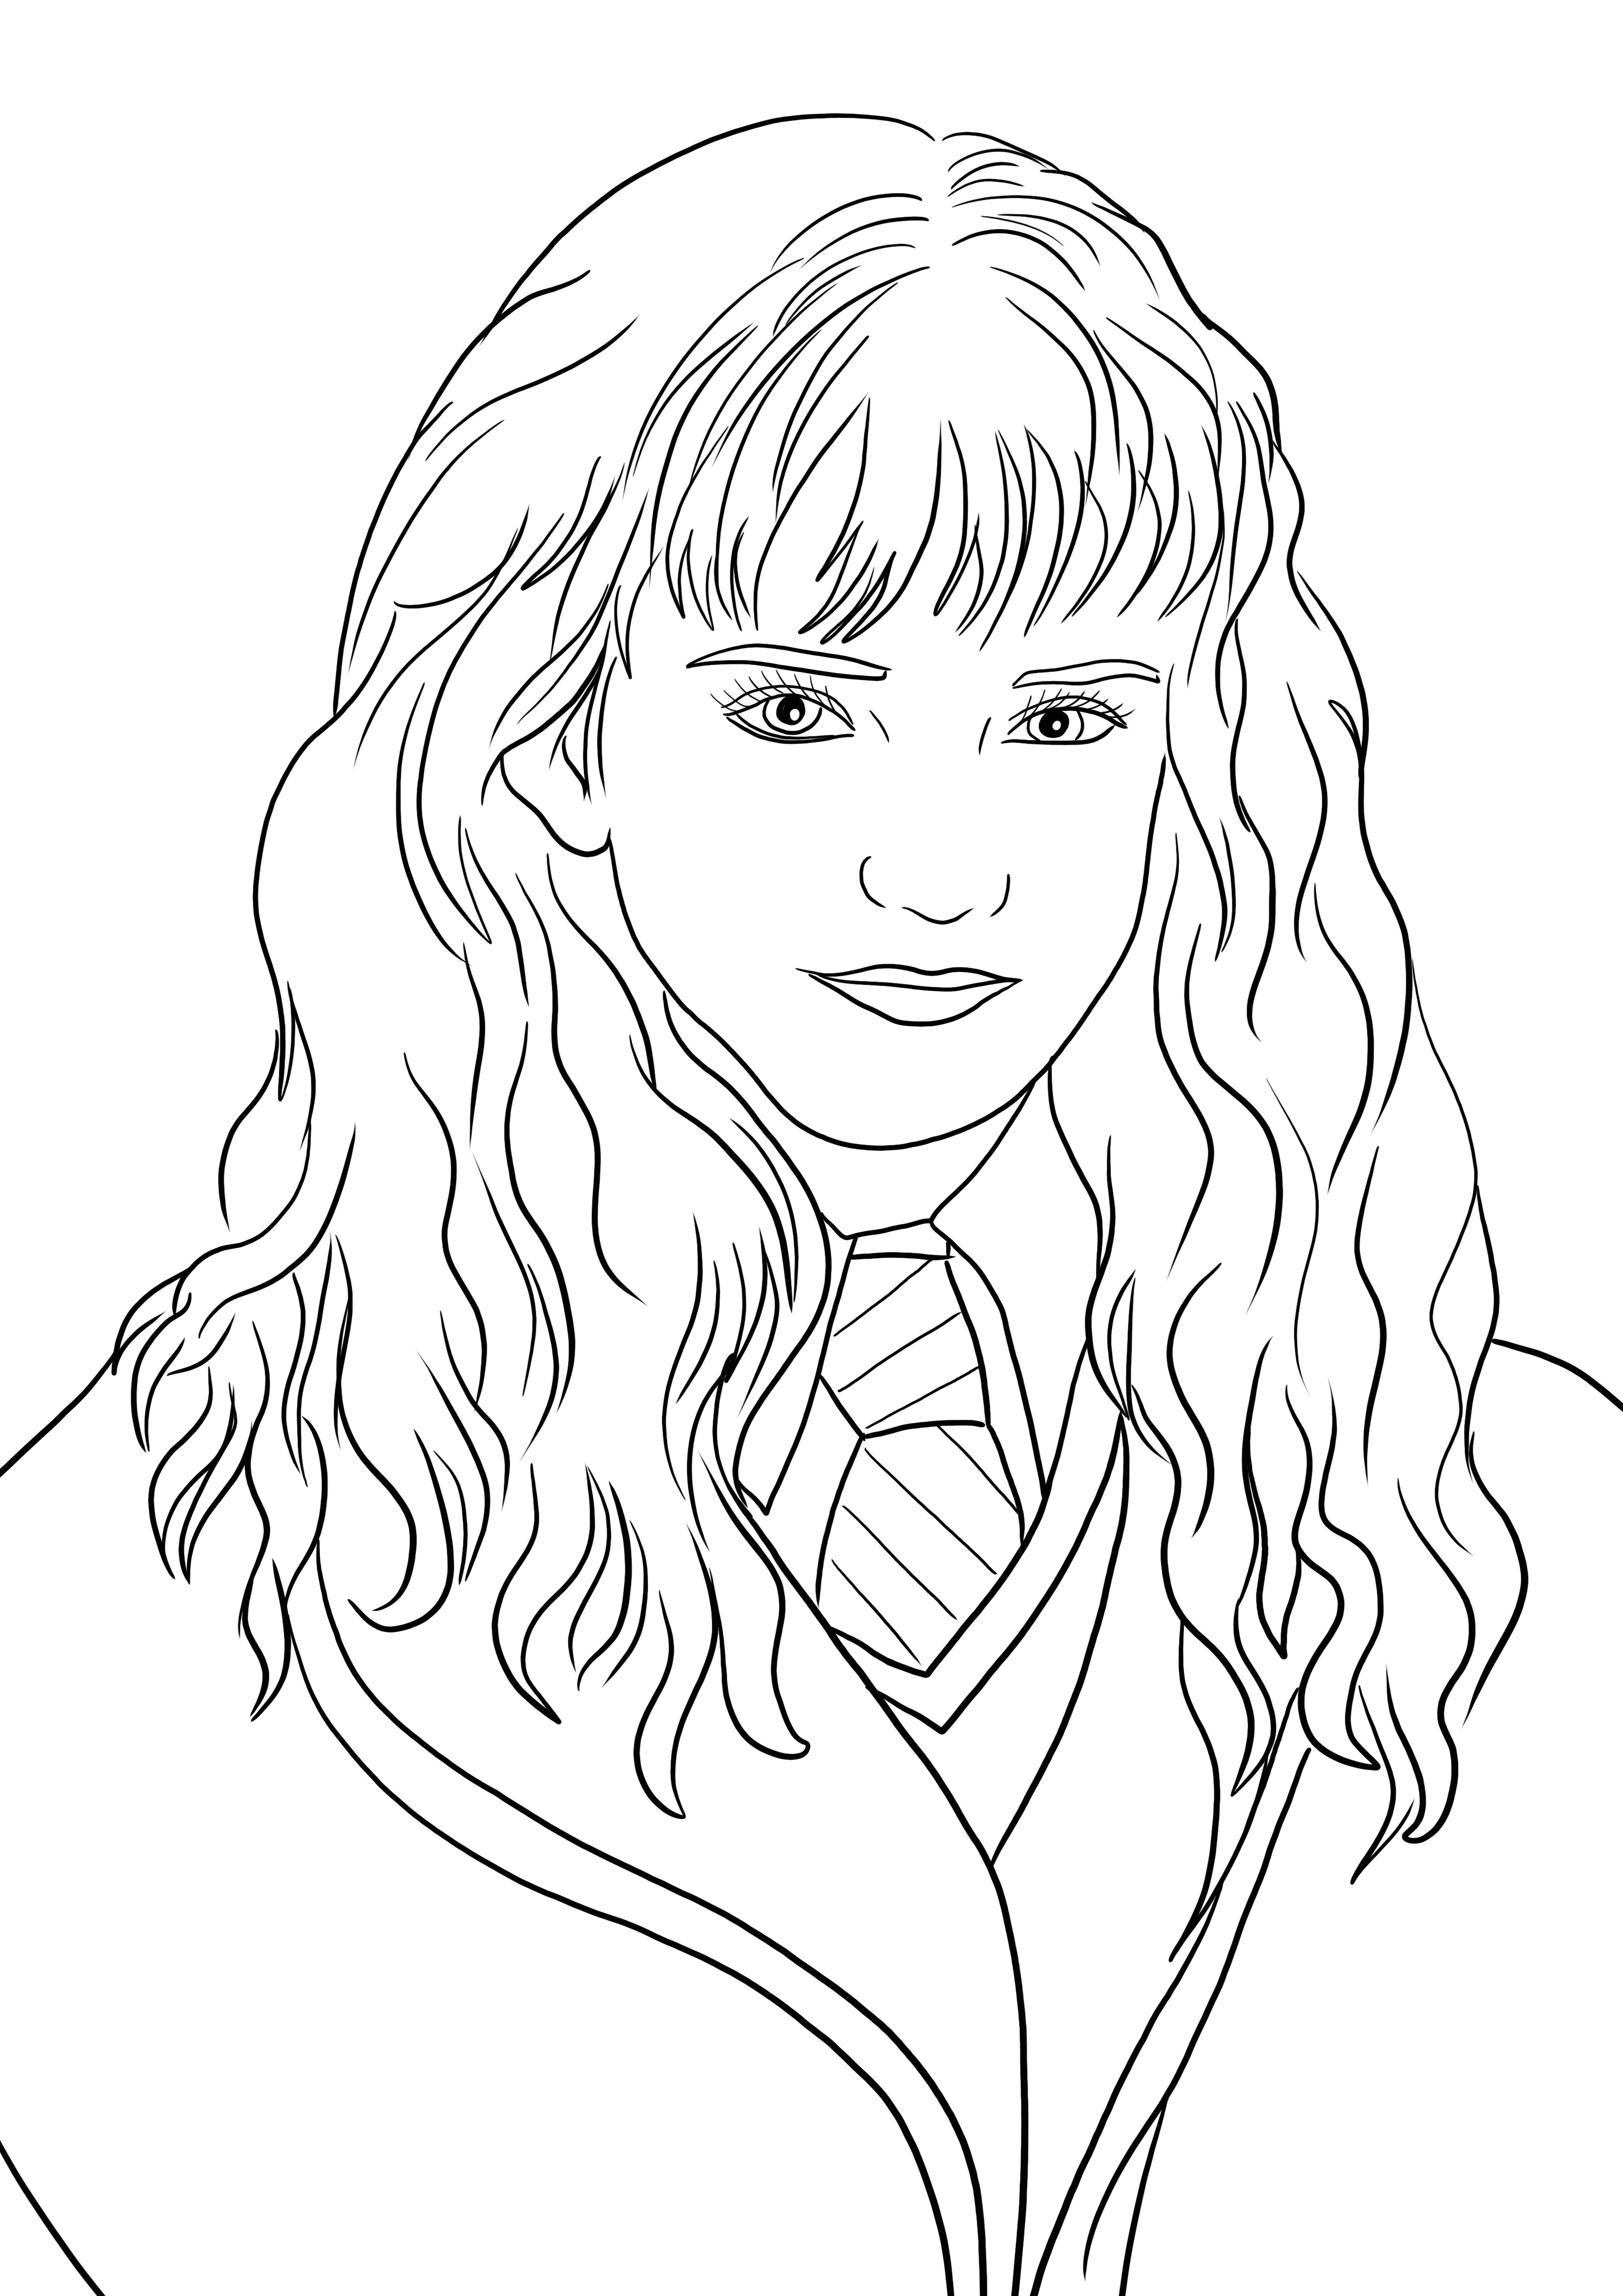 Ilmainen tulostettava Hermione Granger valmis väritykseen ja hauskanpitoon